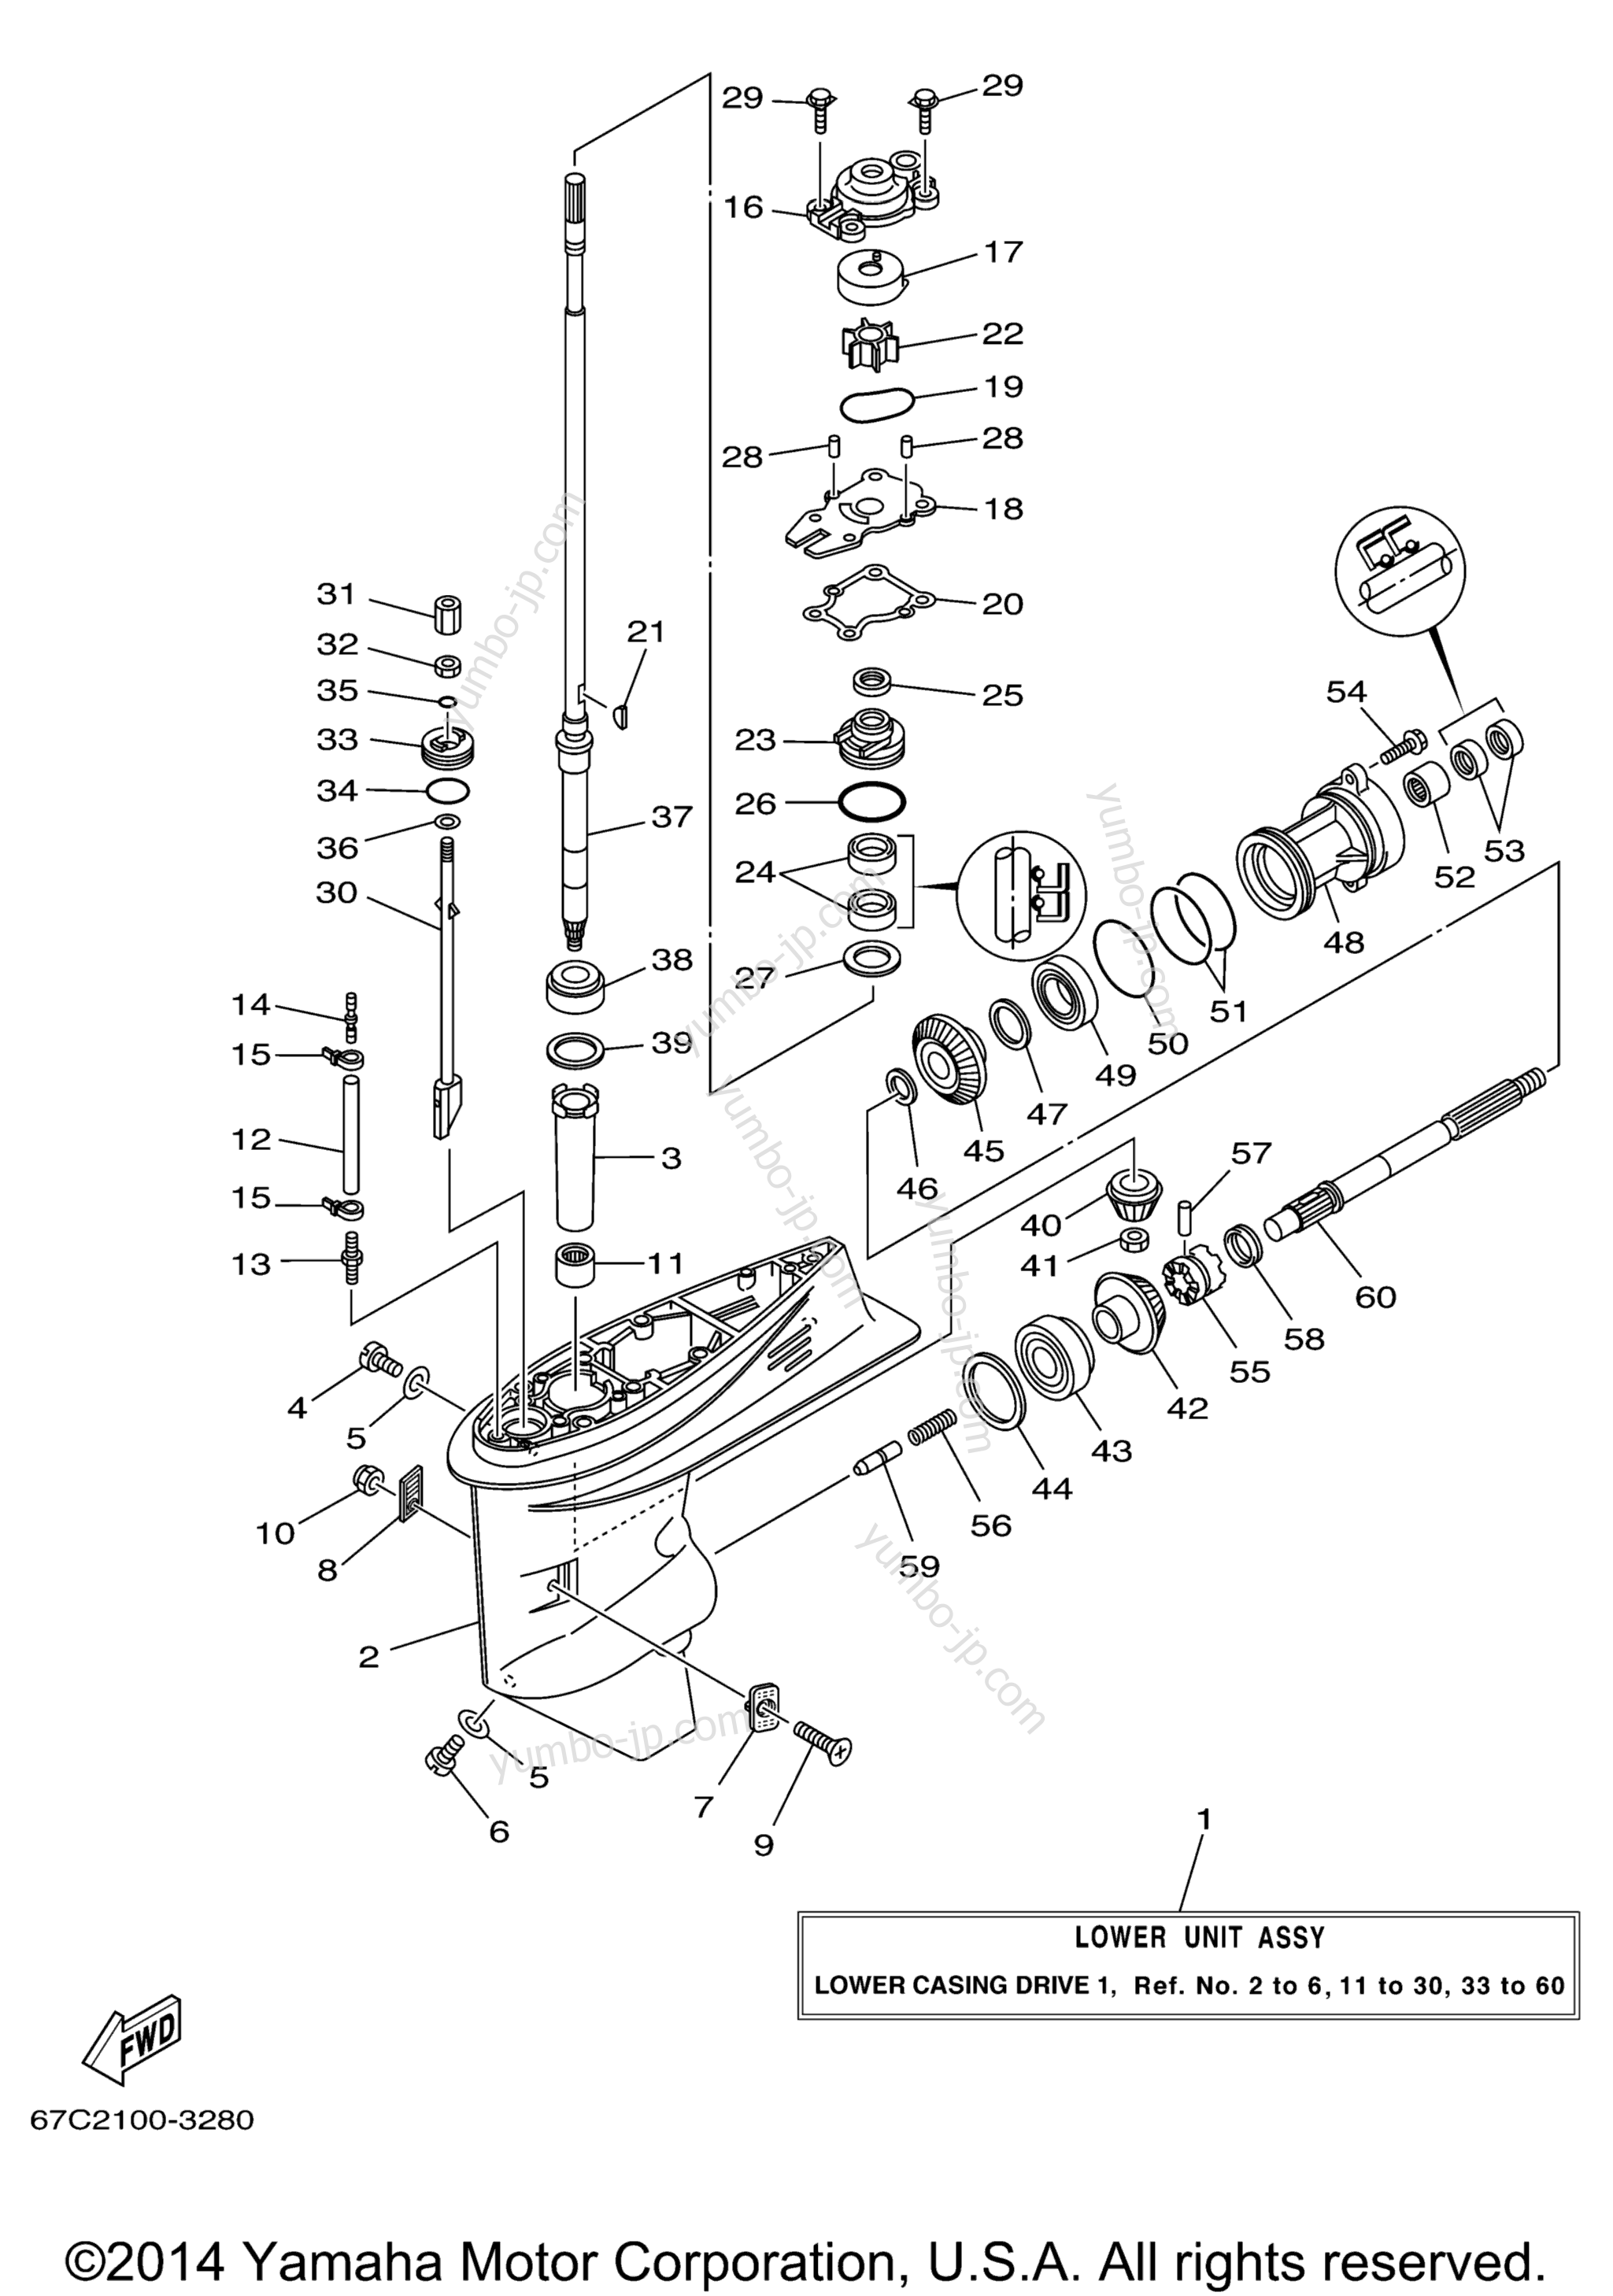 Lower Casing Drive 1 для лодочных моторов YAMAHA F40TLRD_MSHD_MLHD_MJHD_ELRD (F40EJRD) 2005 г.